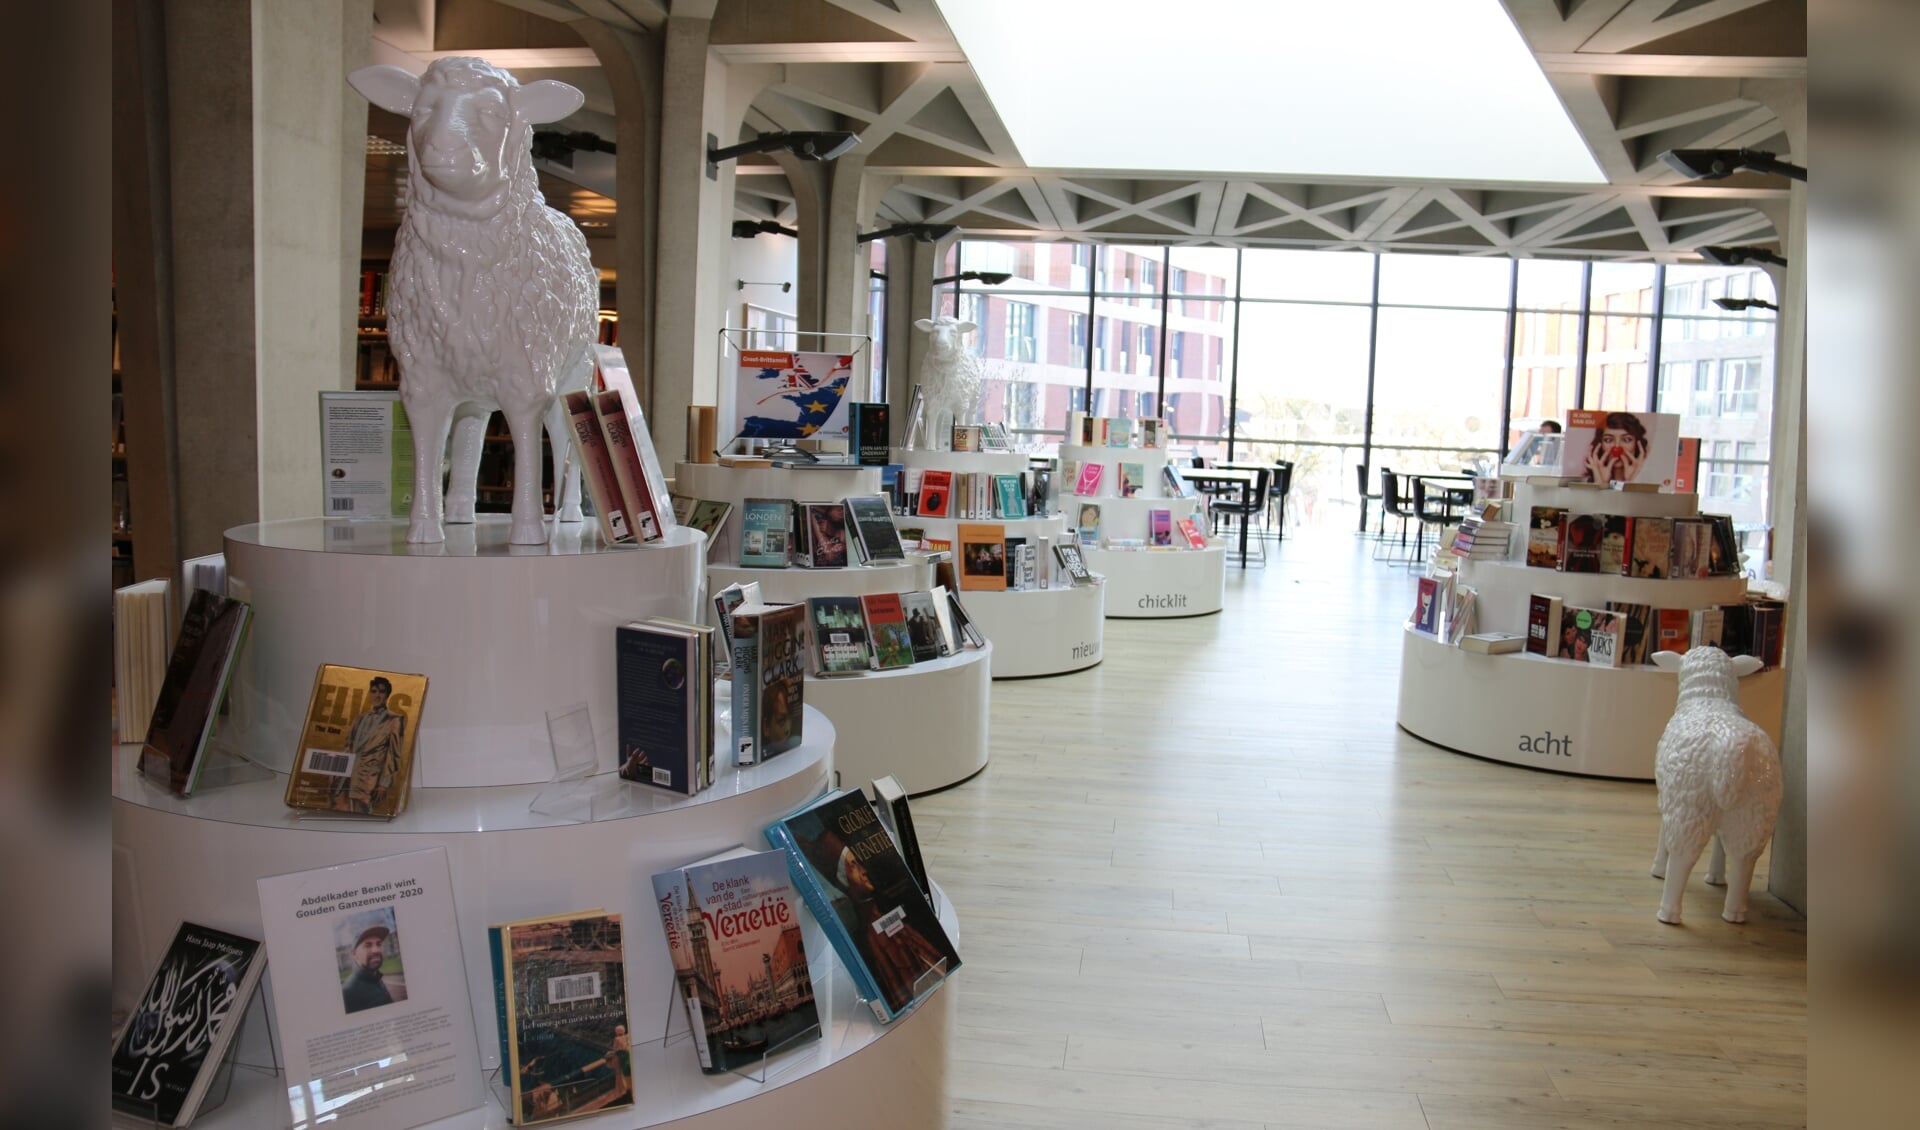 Een archieffoto van de bibliotheek in Veenendaal.